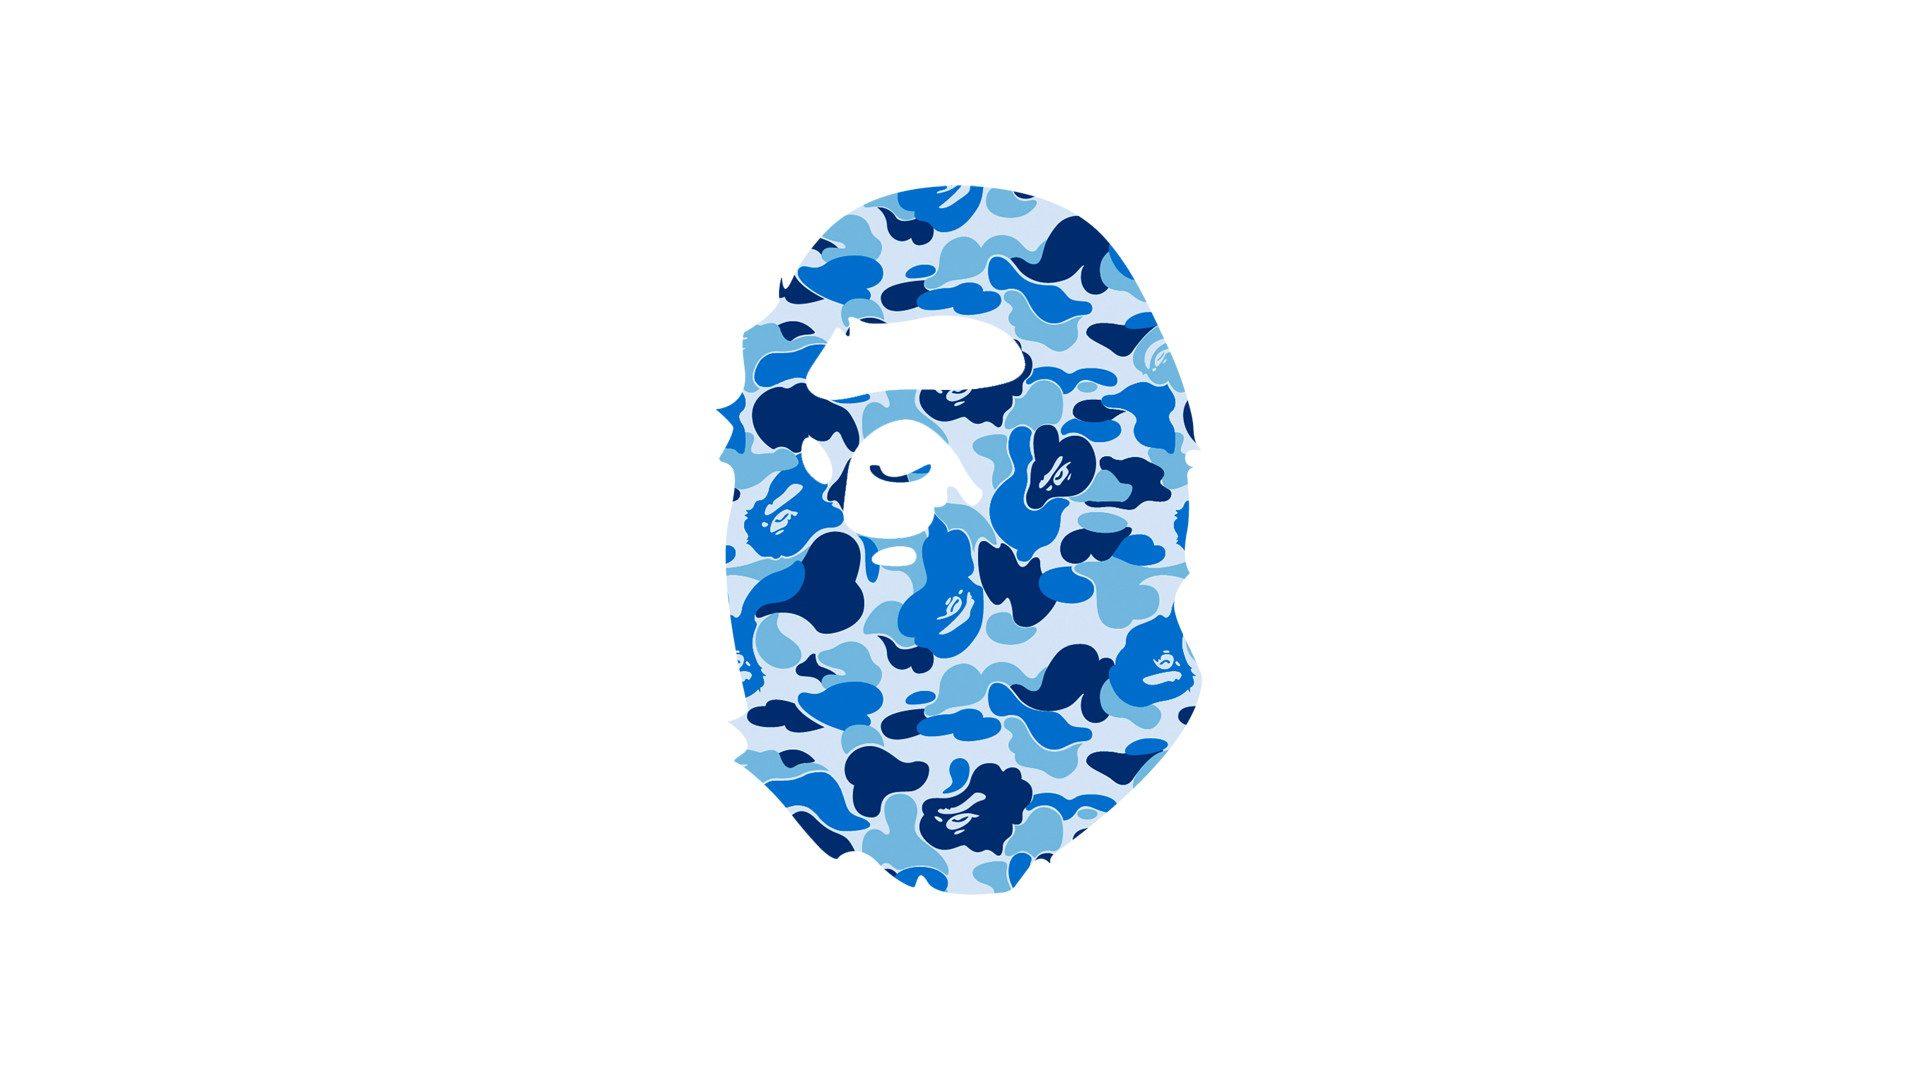 White Bathing Ape Logo - Cool Bathing Ape Logo Wallpaper In Plain White Background